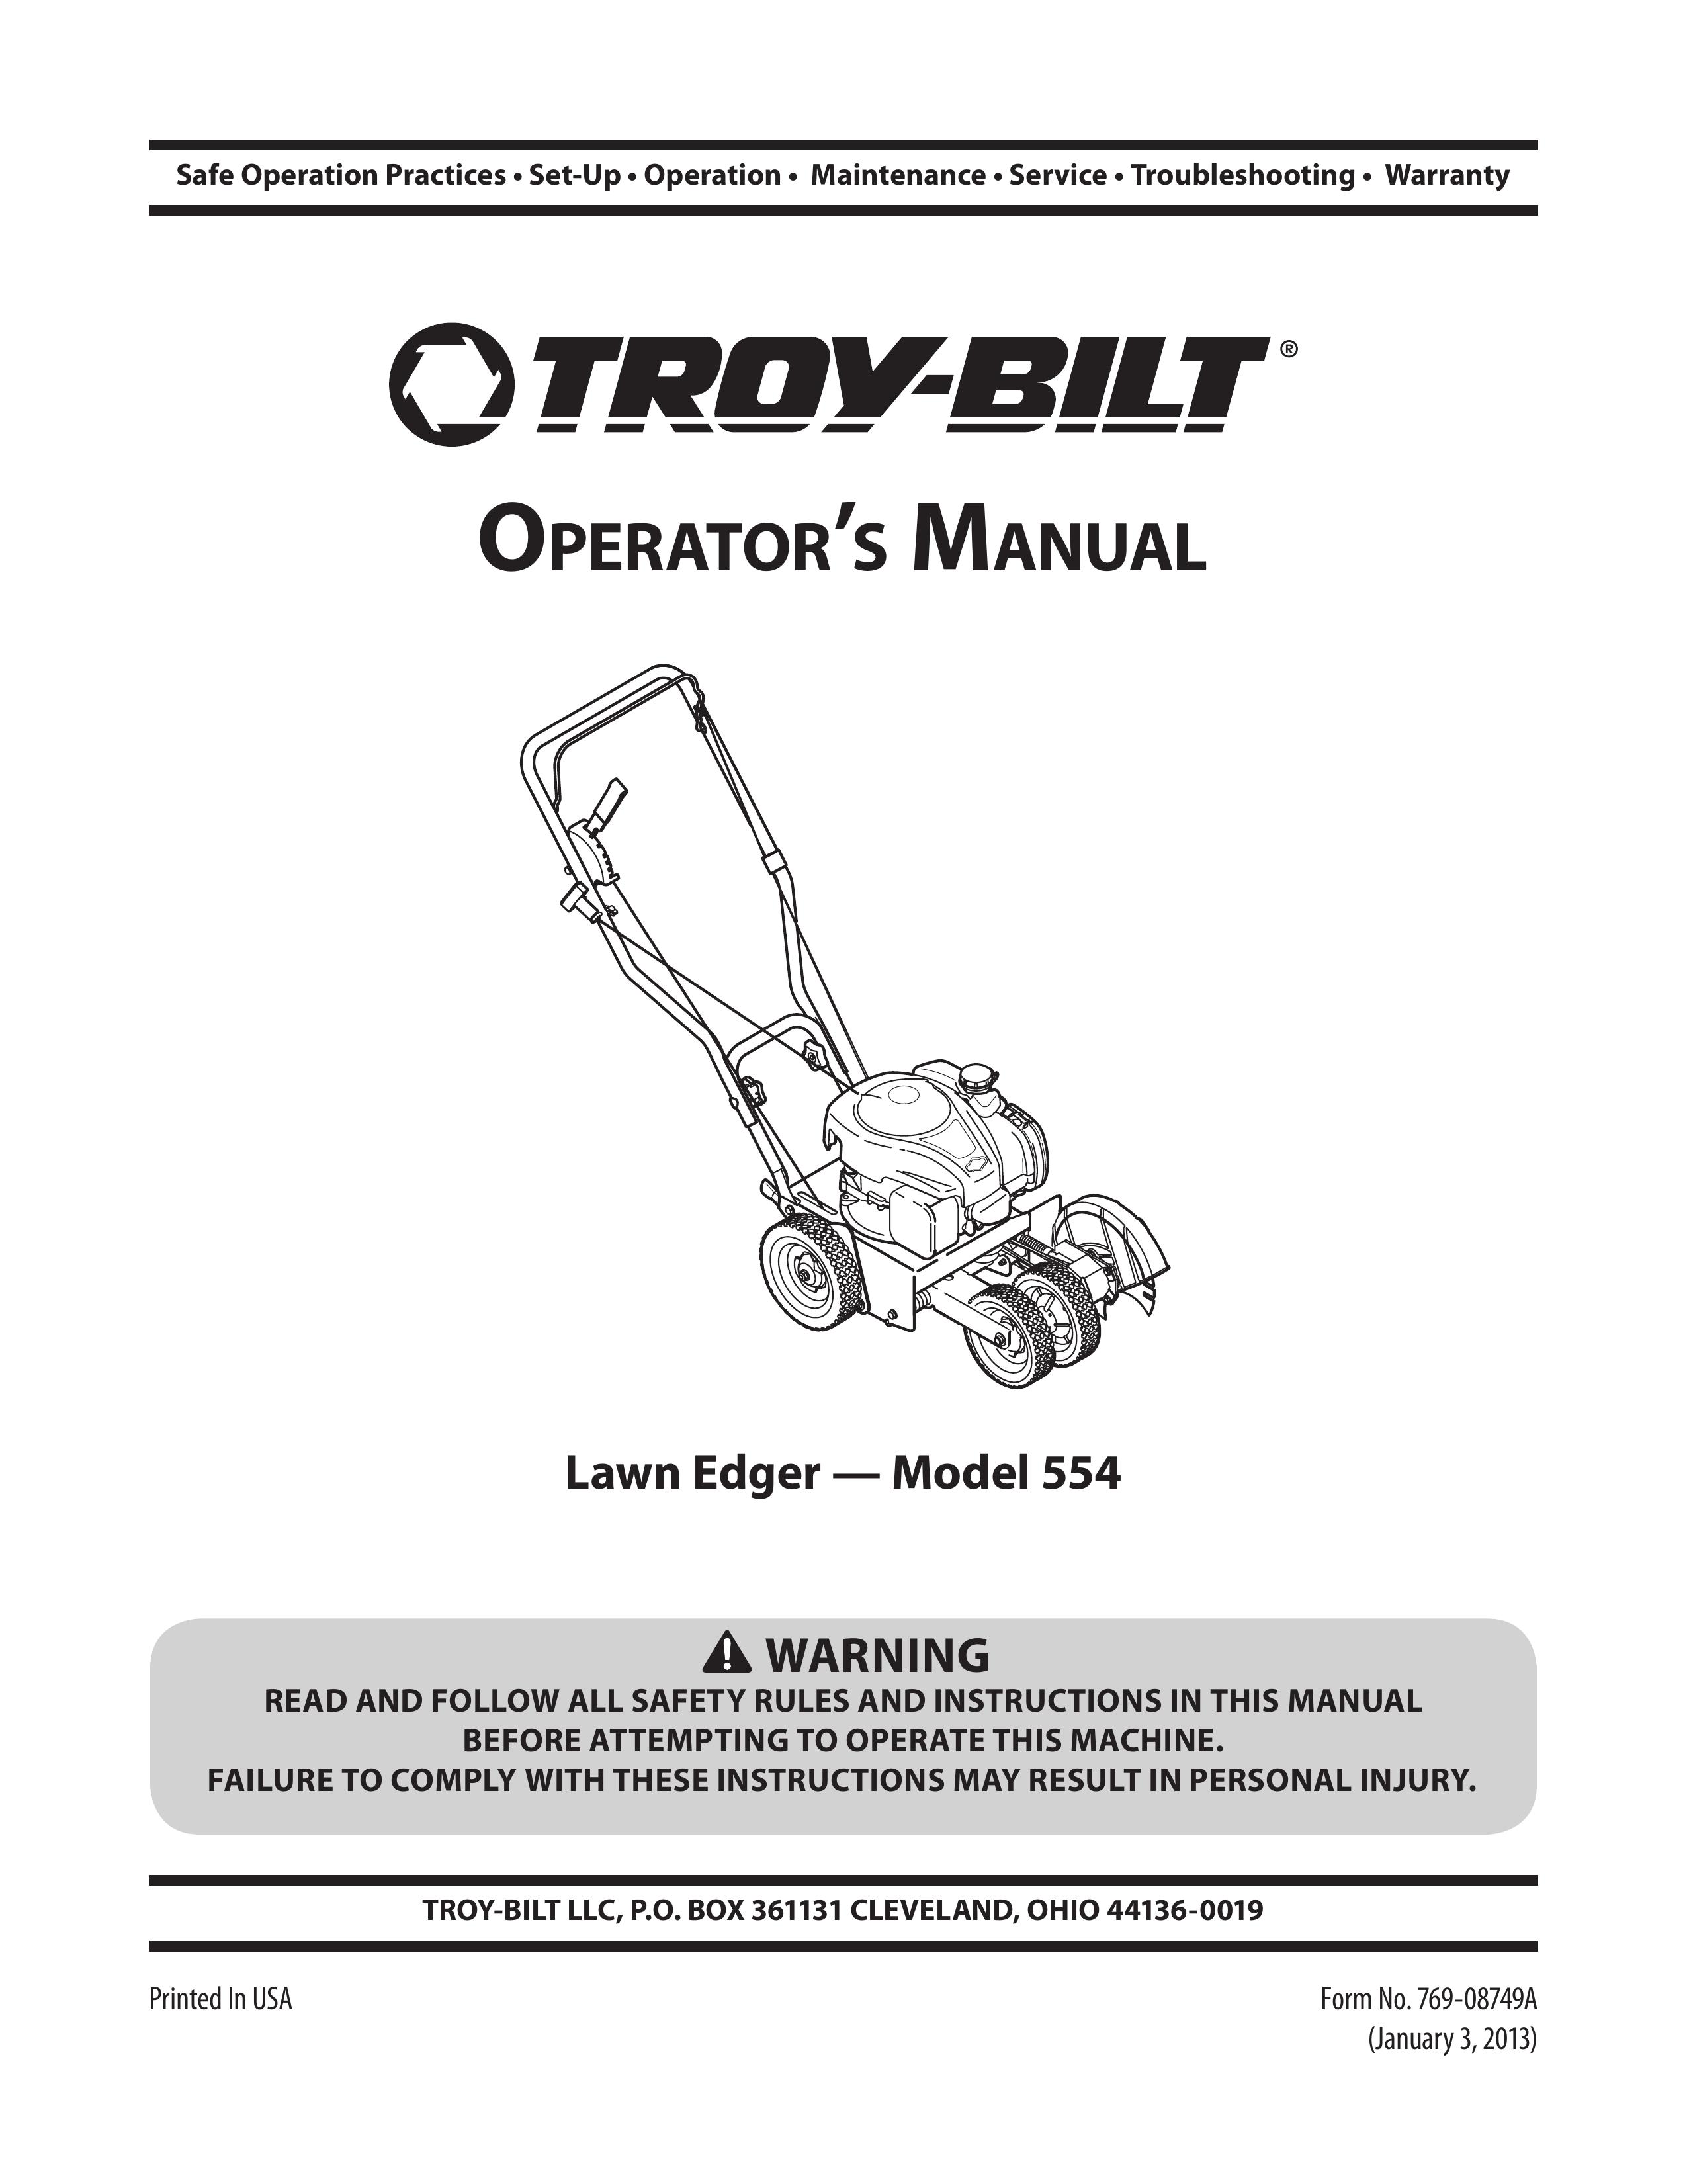 Troy-Bilt 554 Edger User Manual